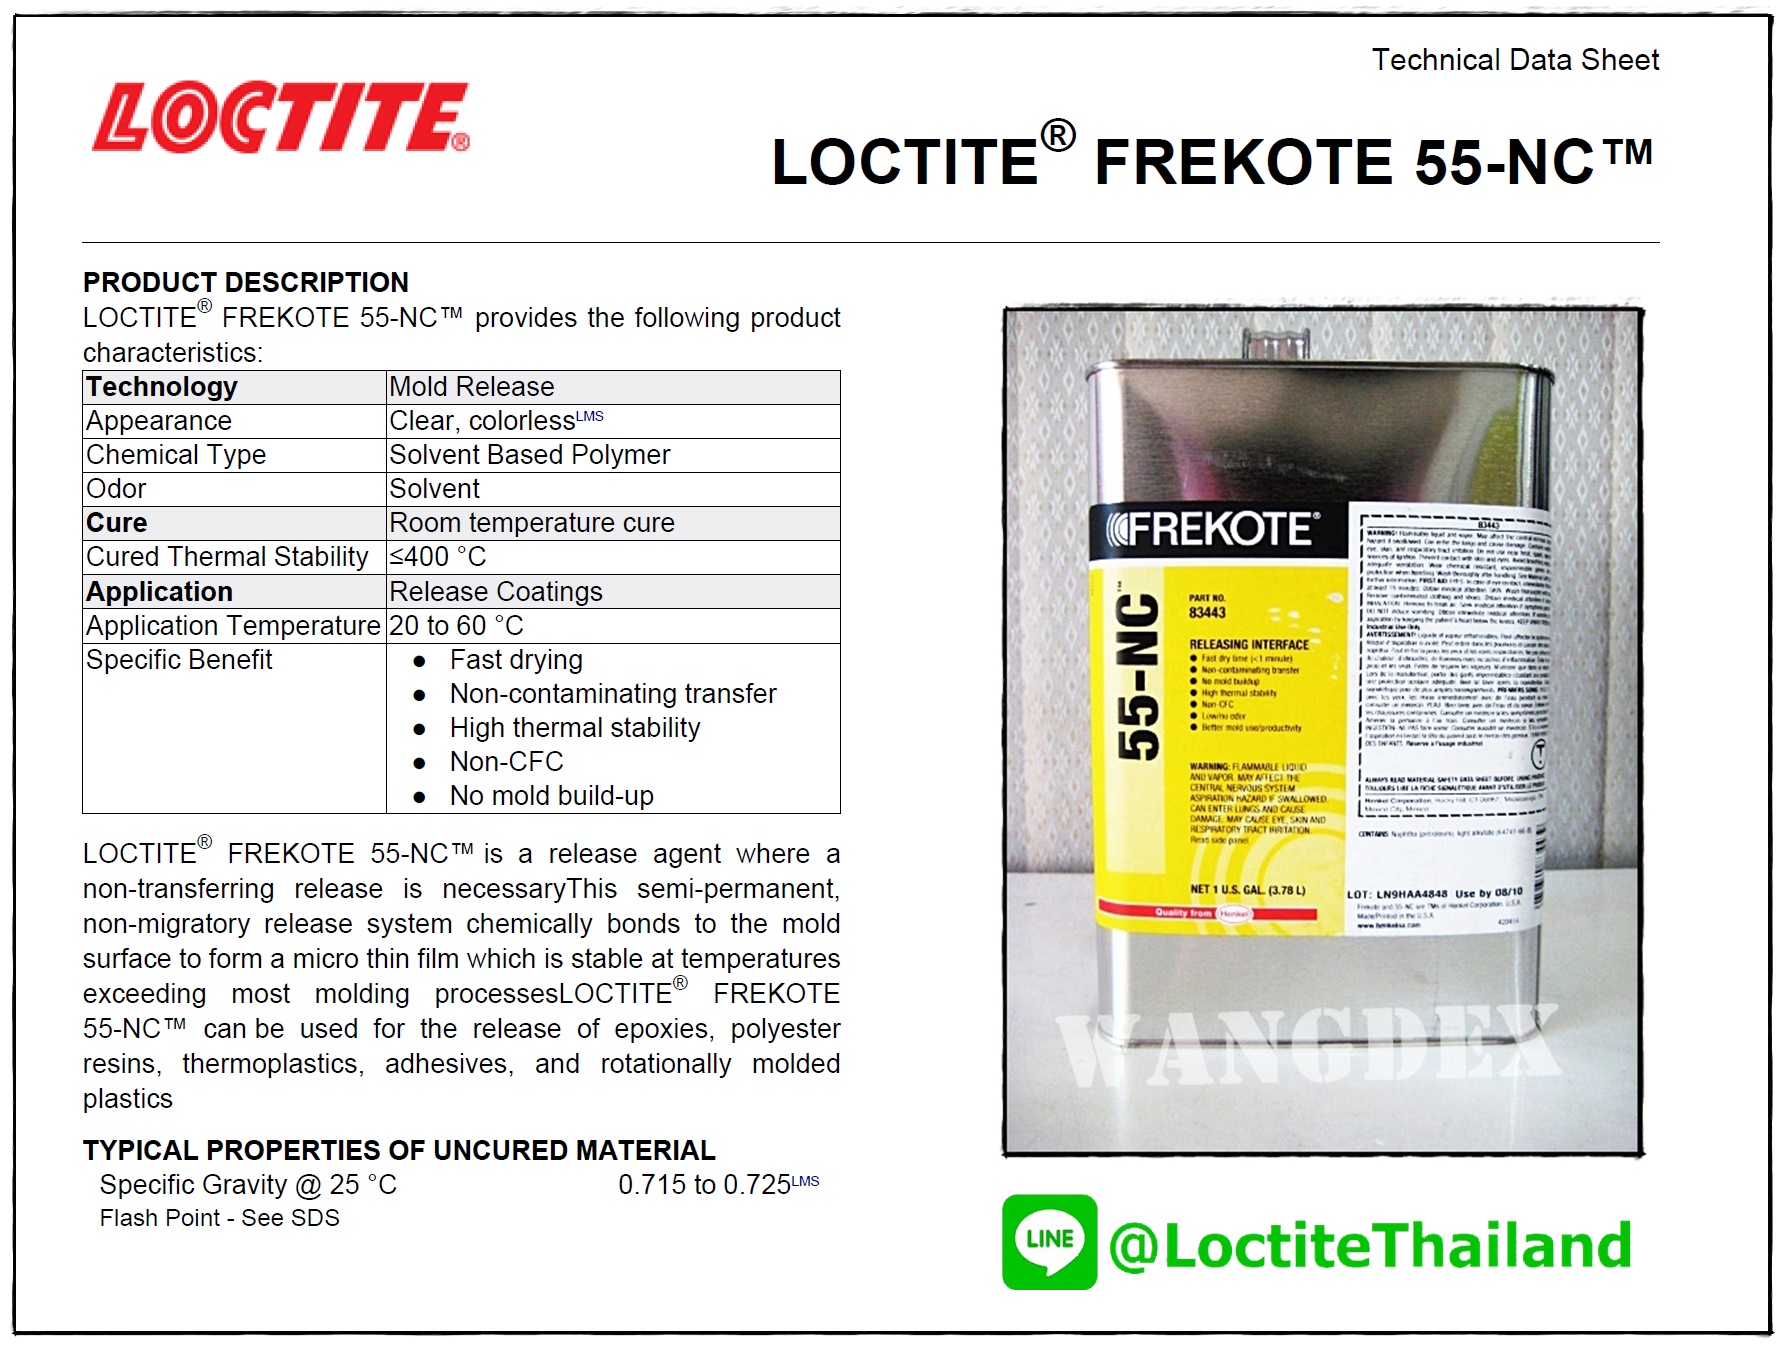 LOCTITE FREKOTE 55-NC